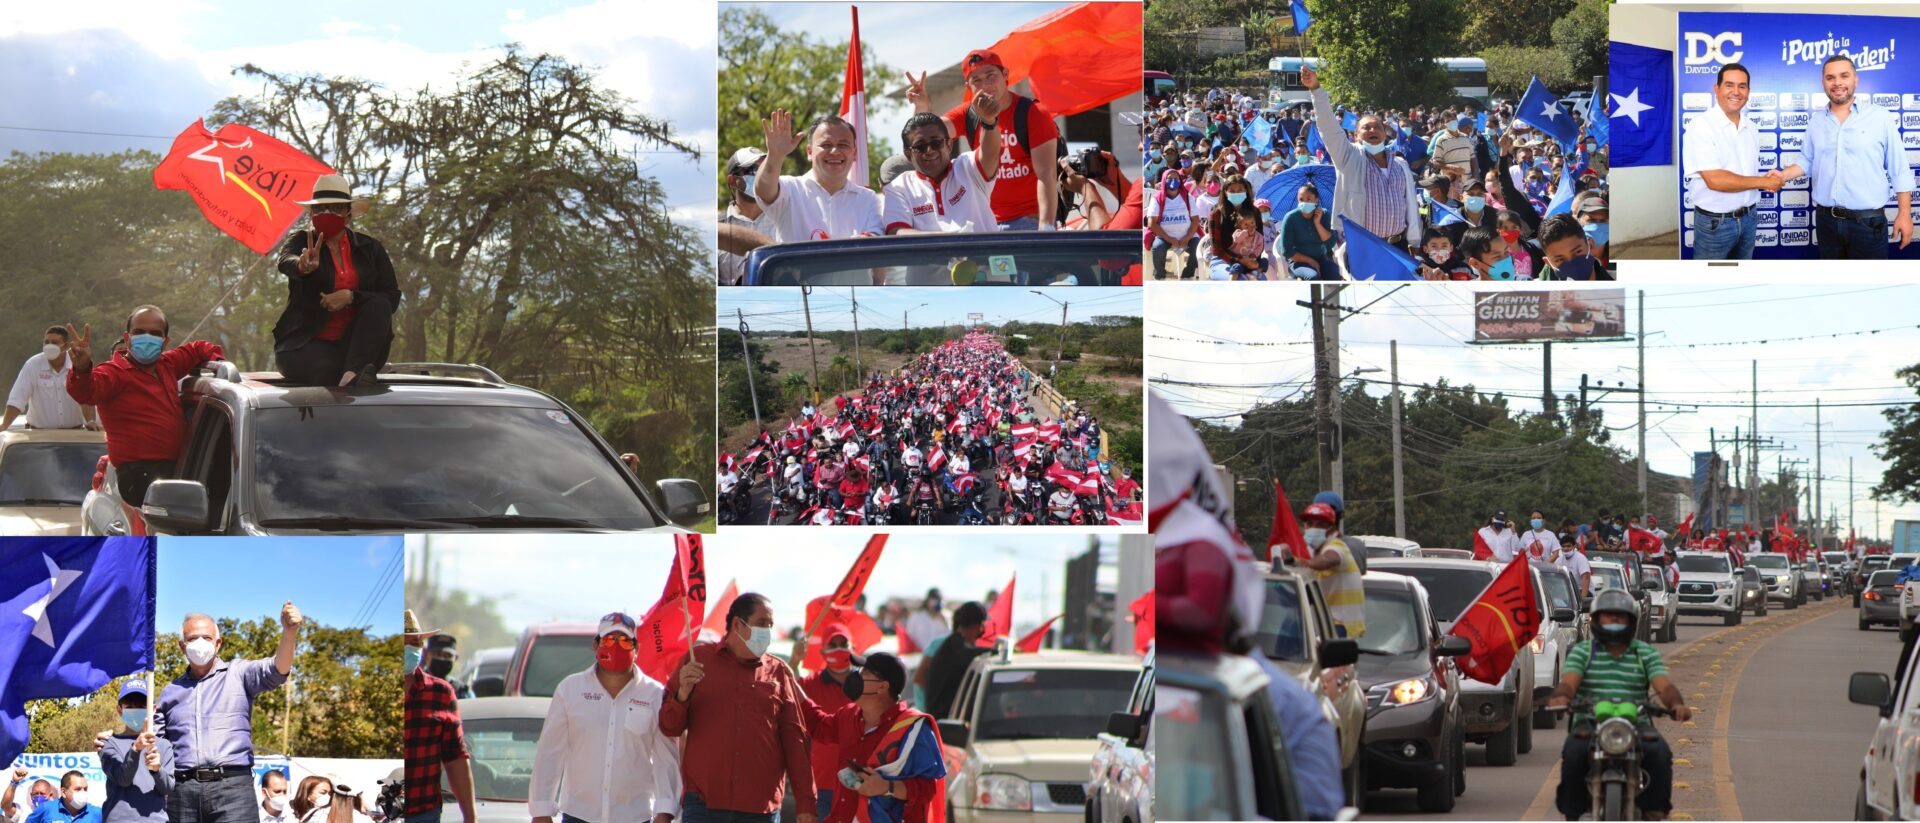 Arranca Oficialmente La Campaña Electoral Para Elecciones Primarias En Honduras Proceso Digital 6537